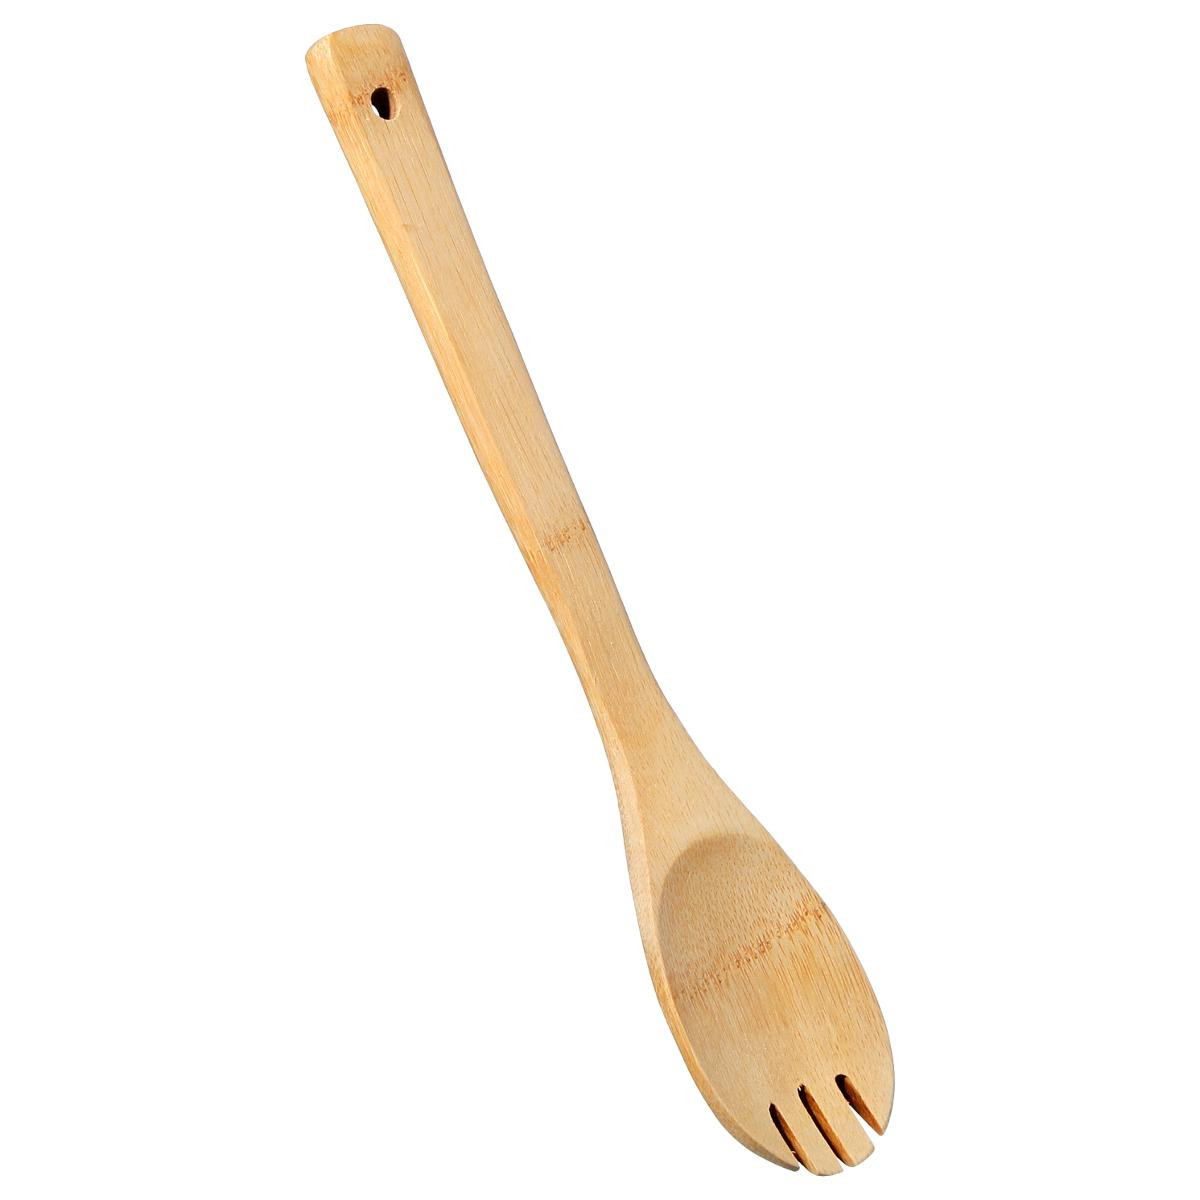 4 spatule en bambou bois cuillere ustensile cuisine